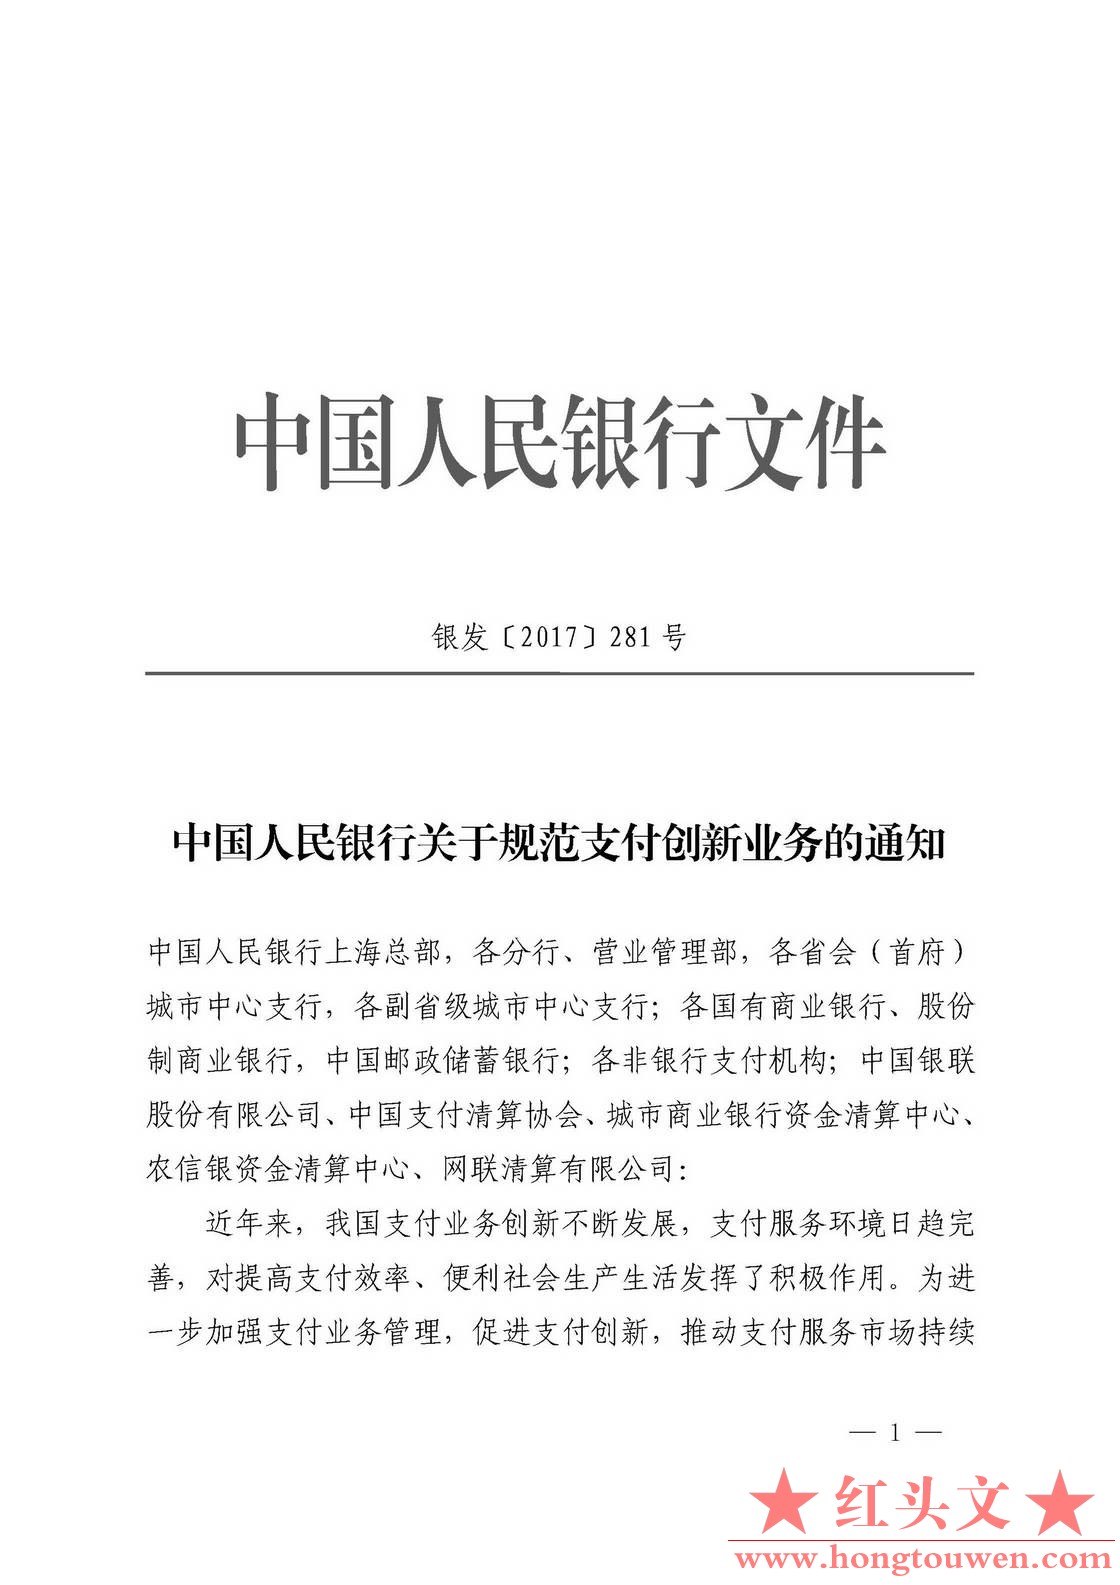 银发[2017]281号-中国人民银行关于规范支付创新业务的通知_页面_1.jpg